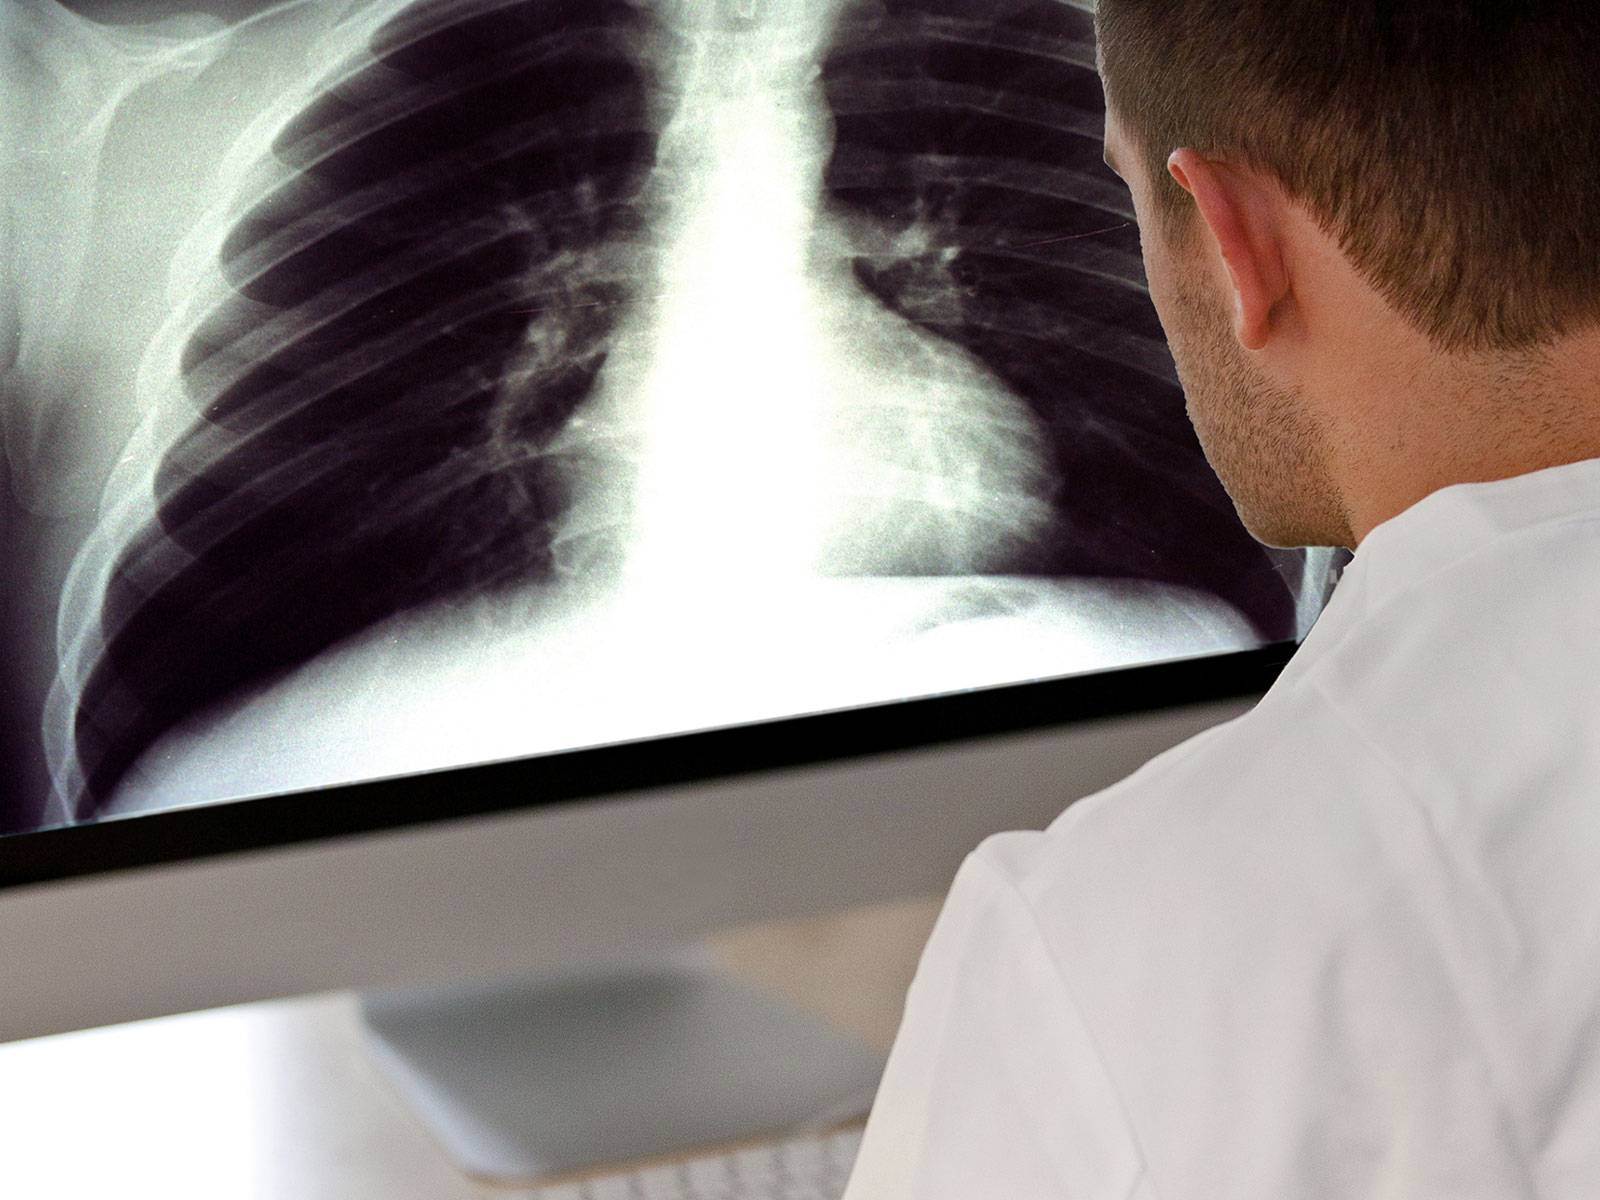 Mann vor Röntgenaufnahme auf Bildschirm.